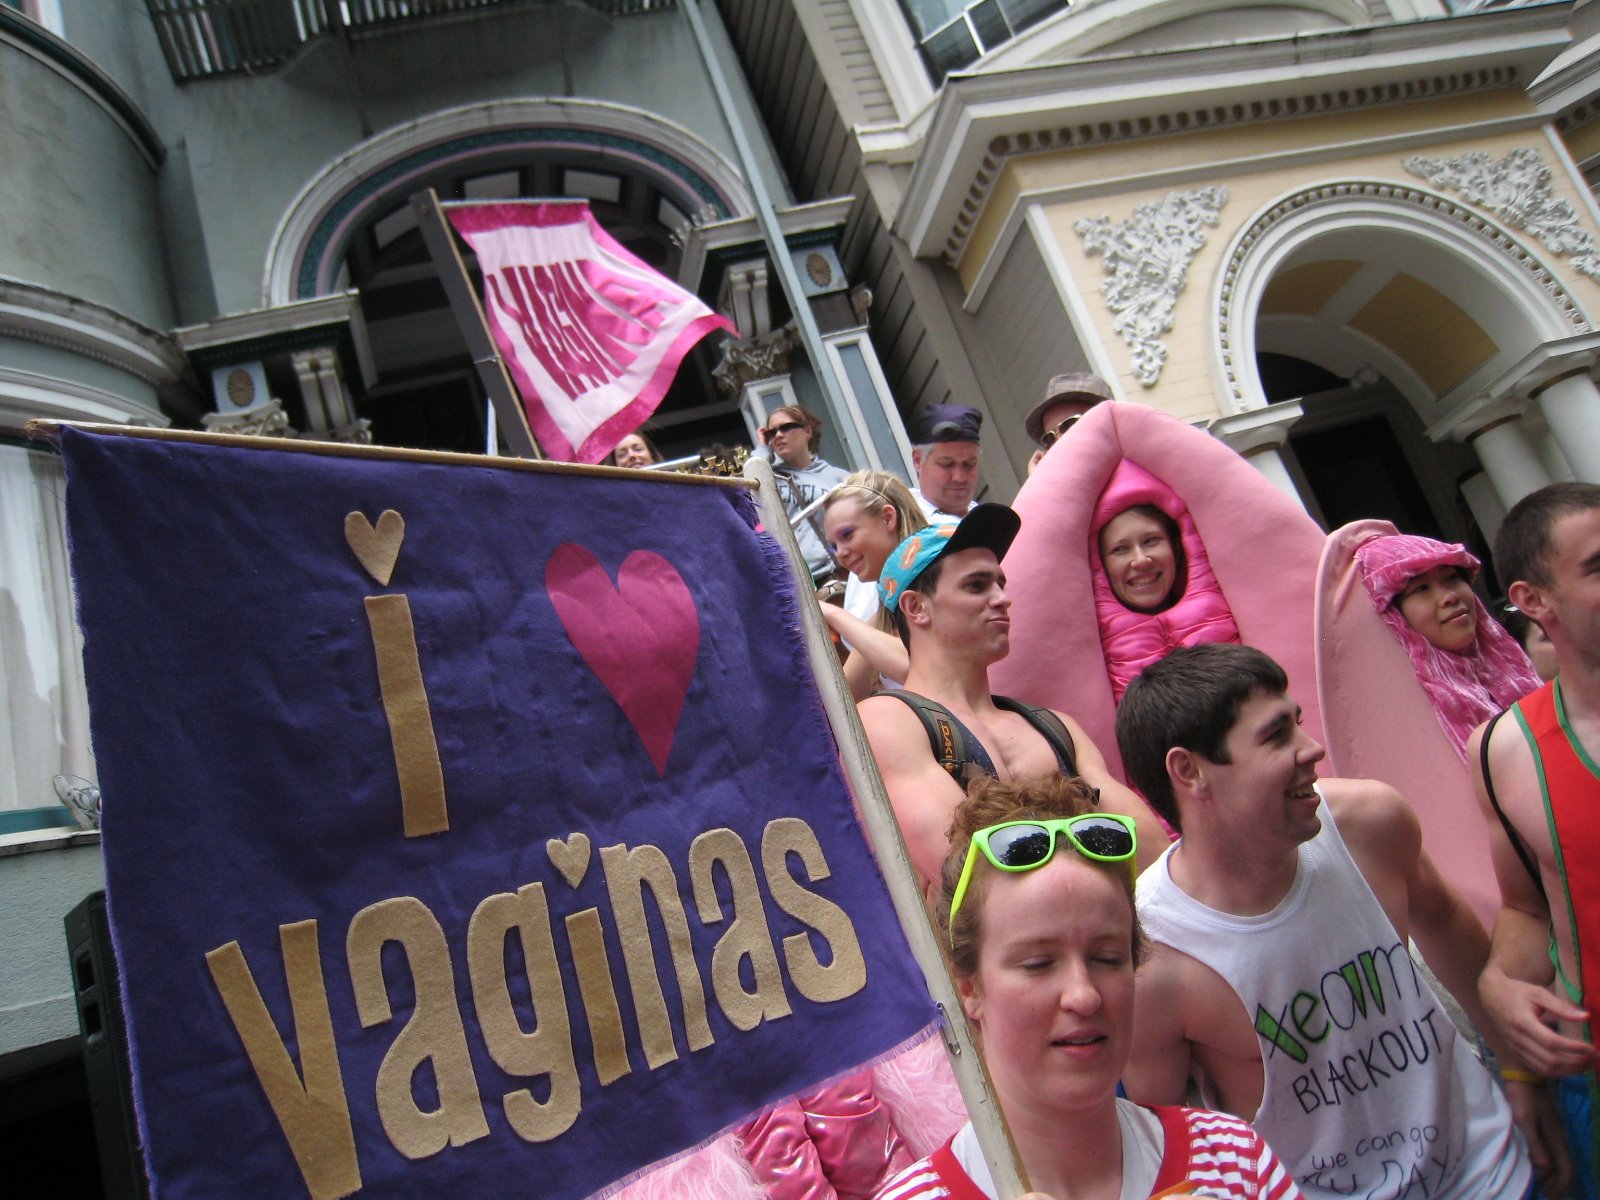 [I+Love+Vaginas.jpg]